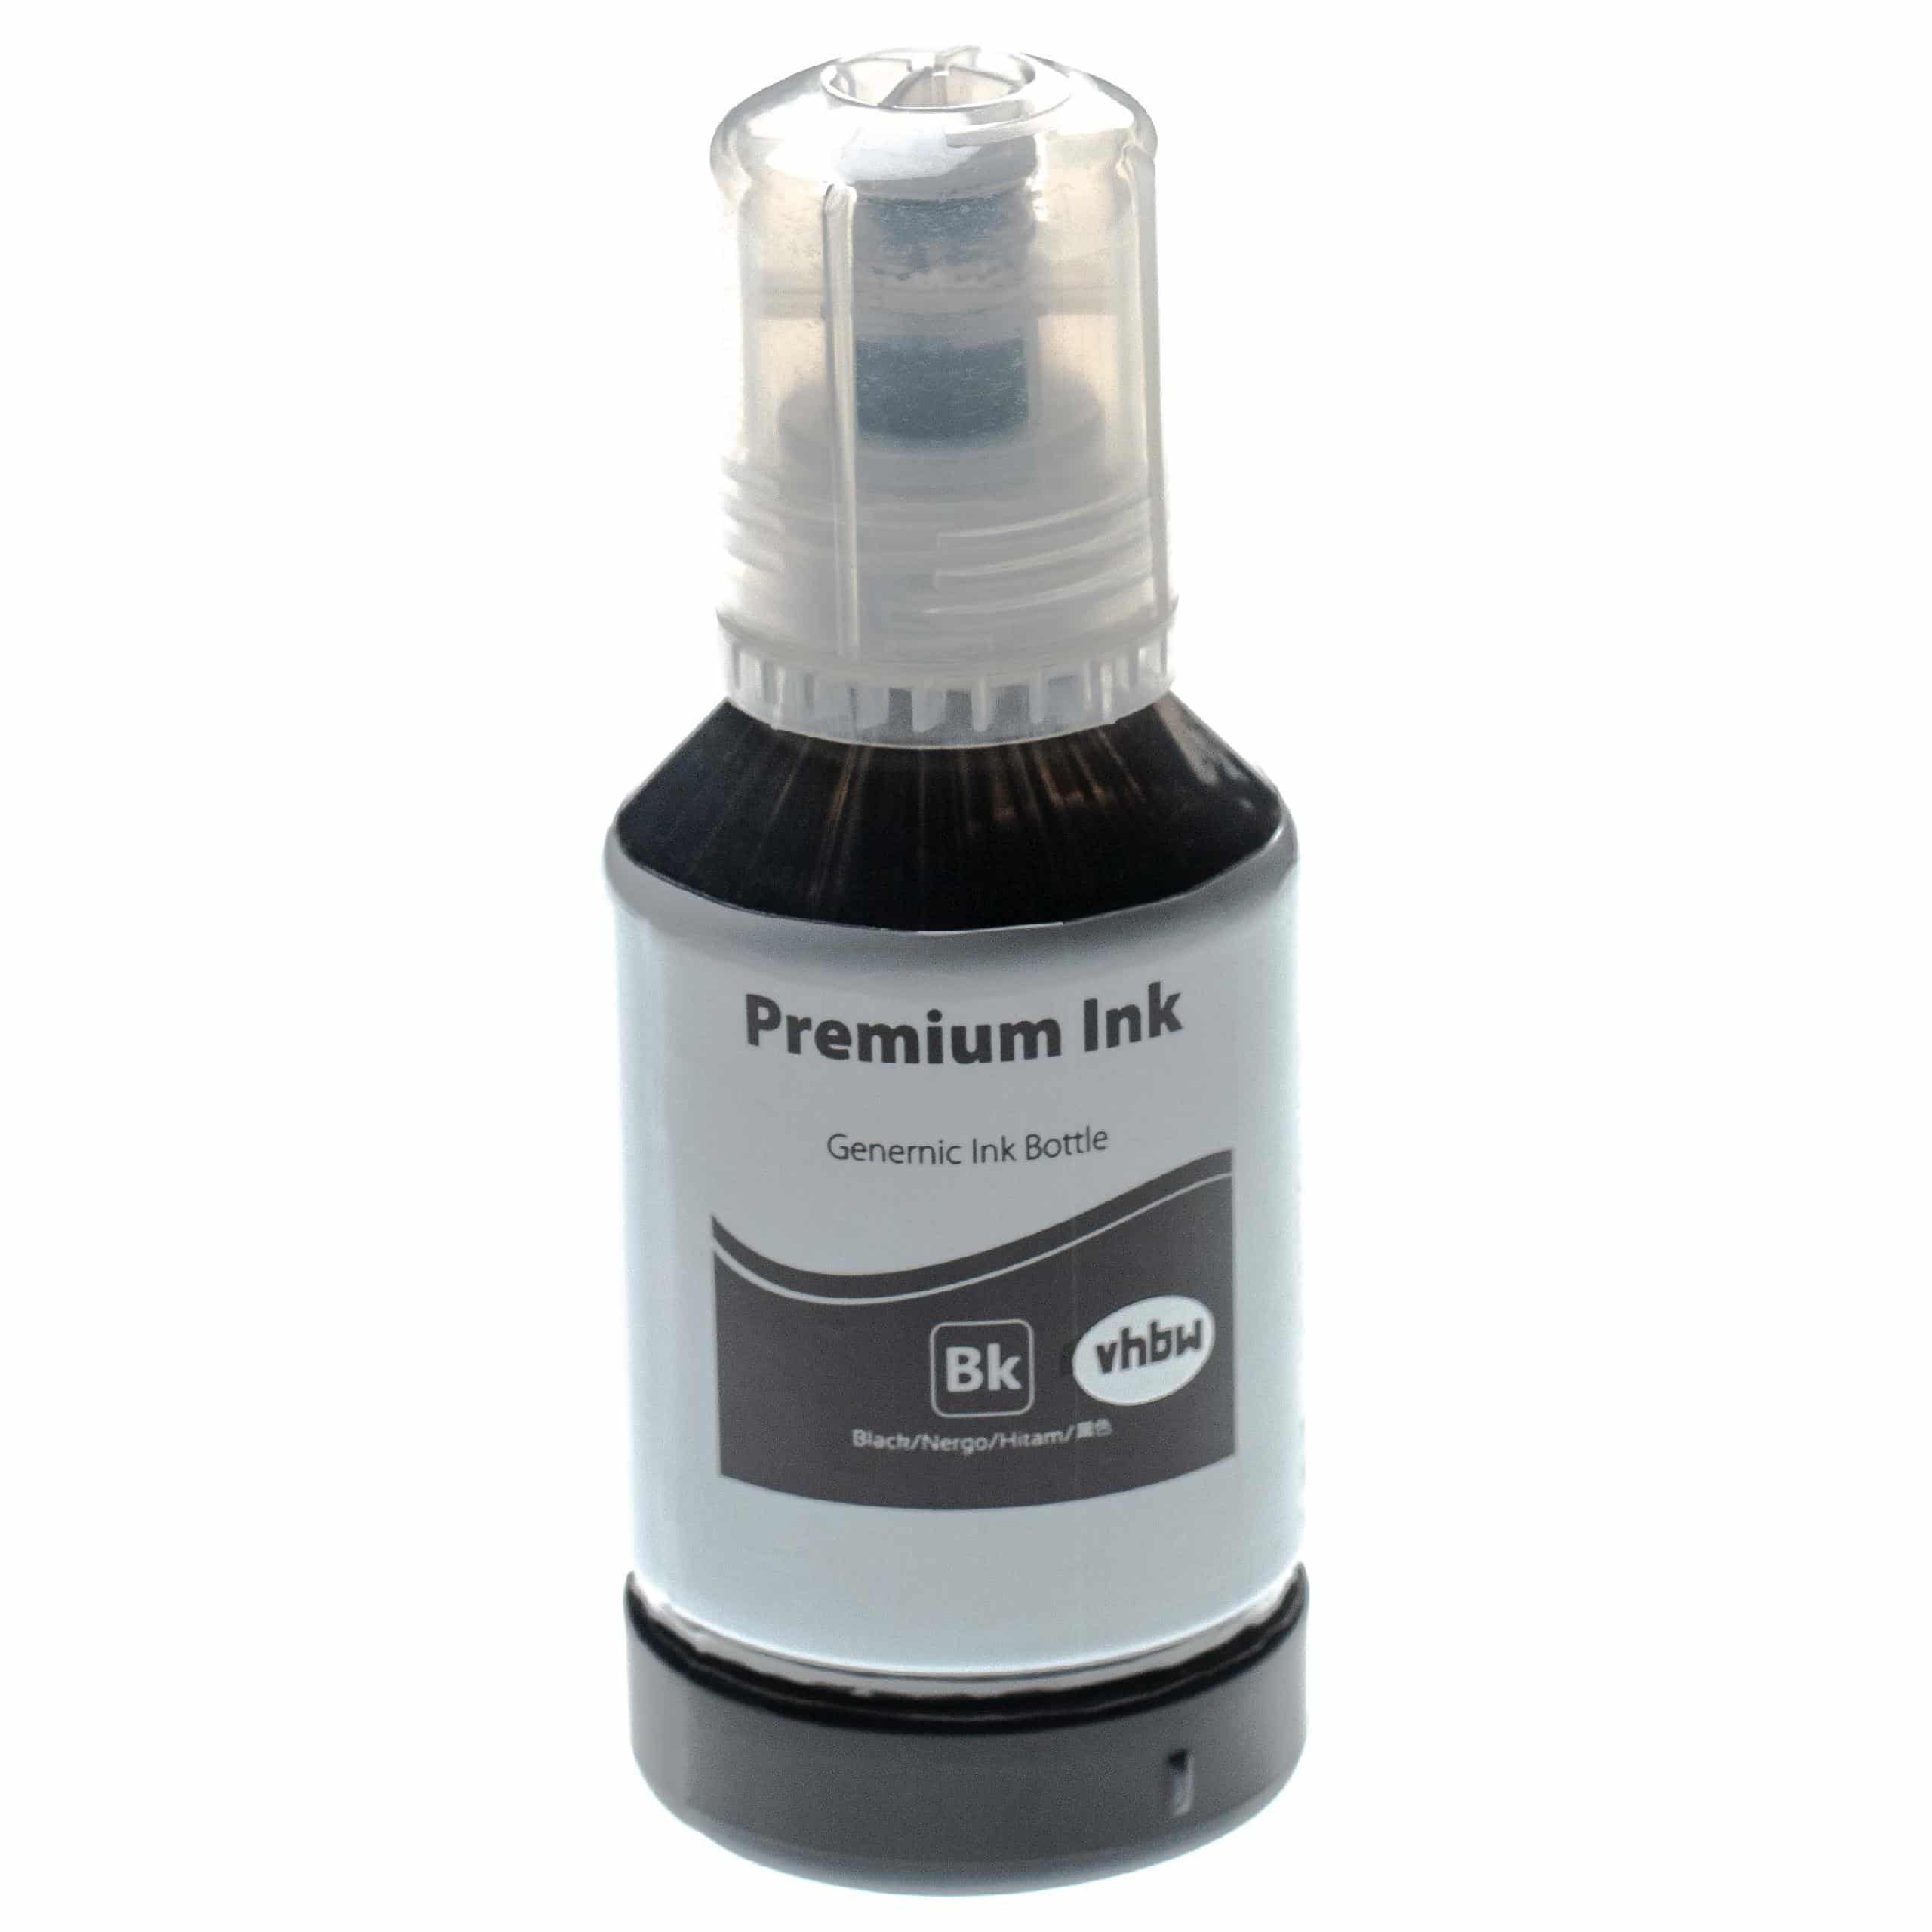 Encre rechargable noir remplace Epson 102 encre pigmentée noire pour imprimante Epson - Pigmentée, 127ml